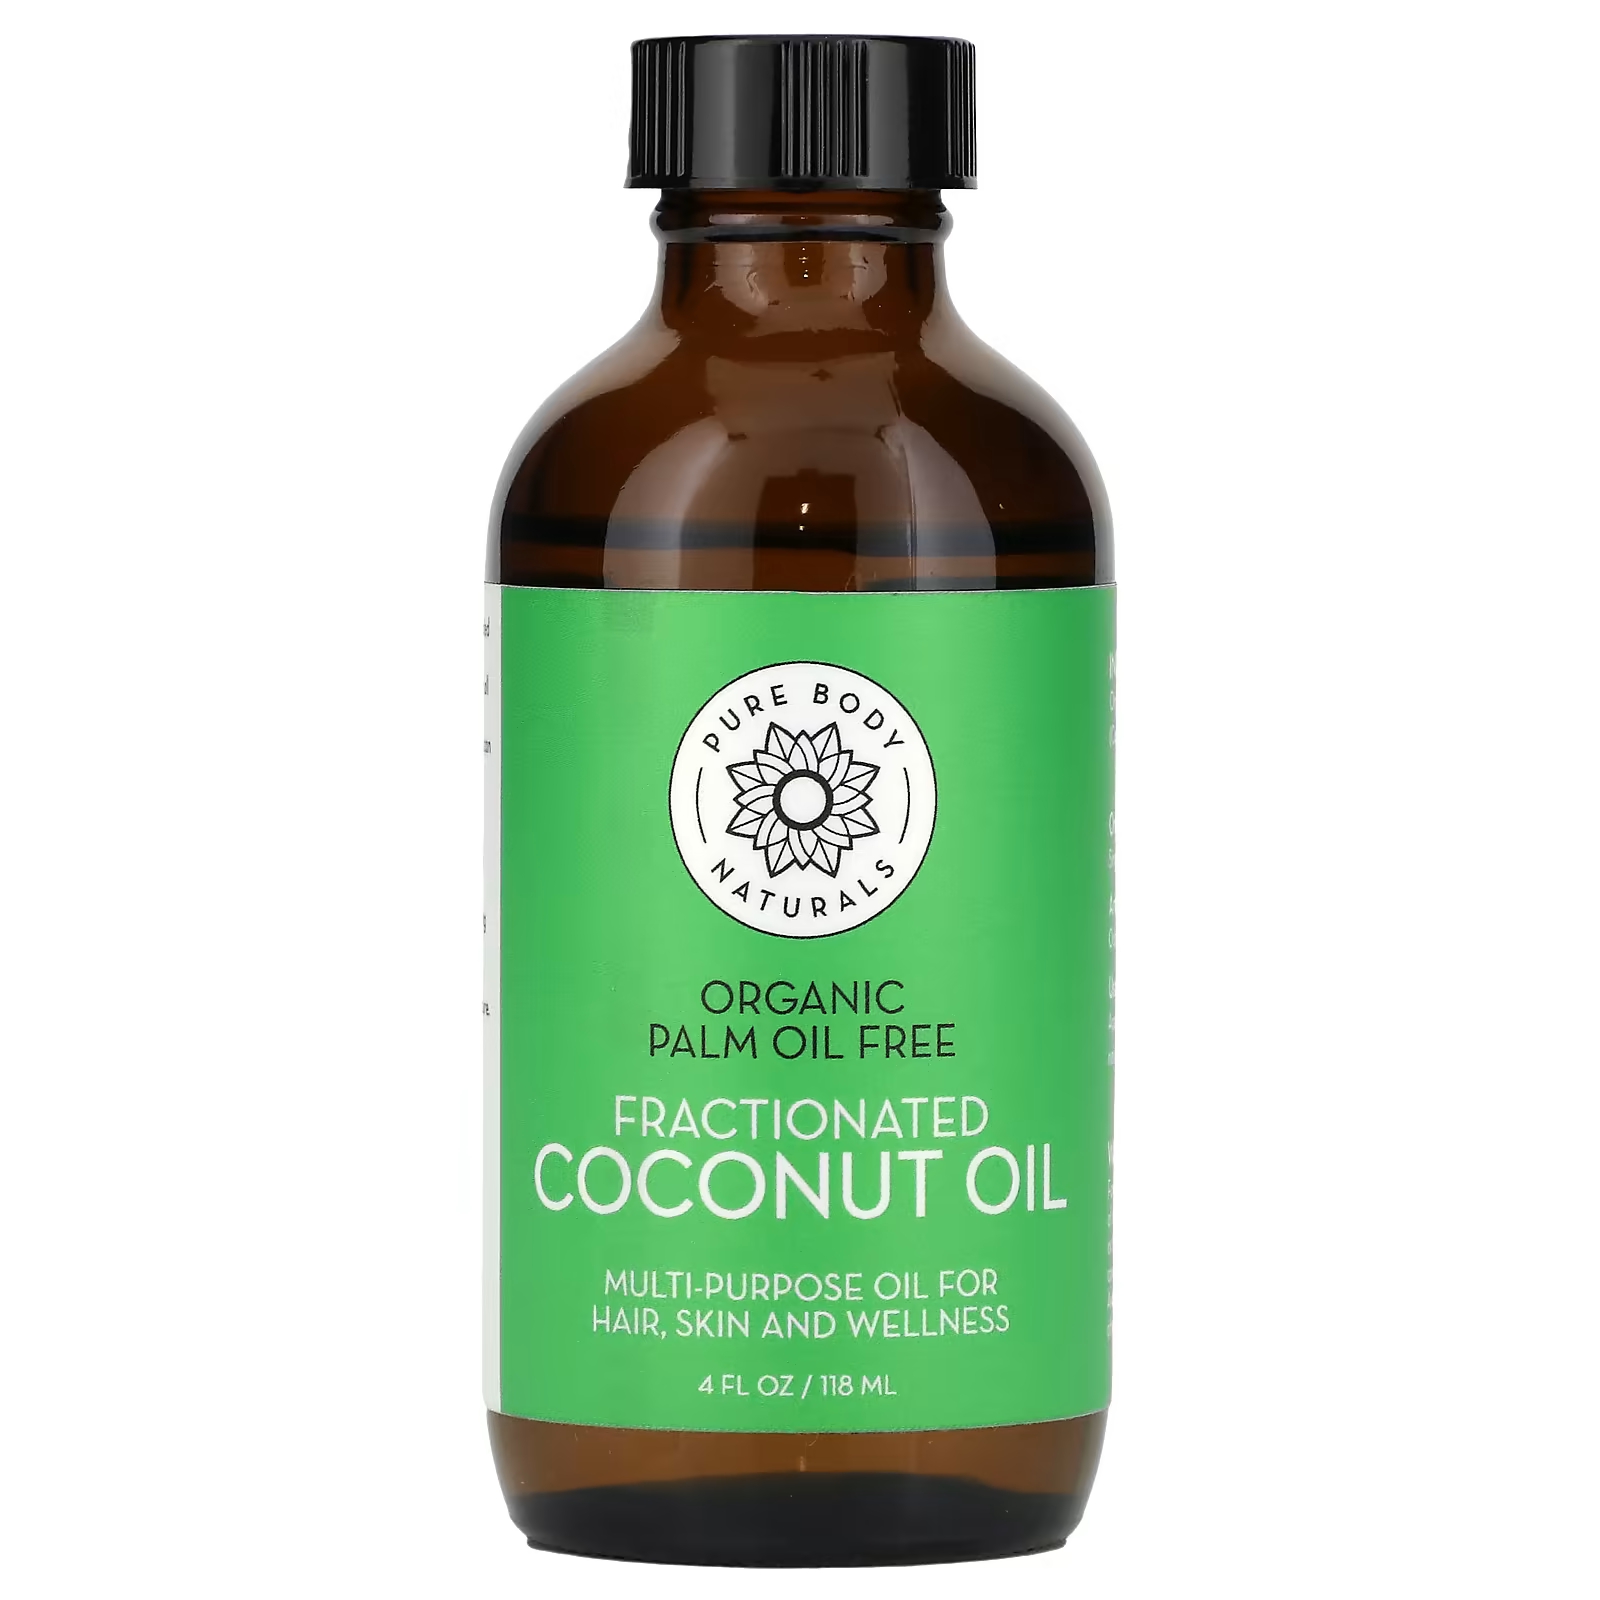 Масло Pure Body Naturals Фракционированное кокосовое, 118мл 100 мл натуральное чистое кокосовое масло органическое эфирное масло экстра девственницы для волос кокосовое масло для лучшей кожи кокосо